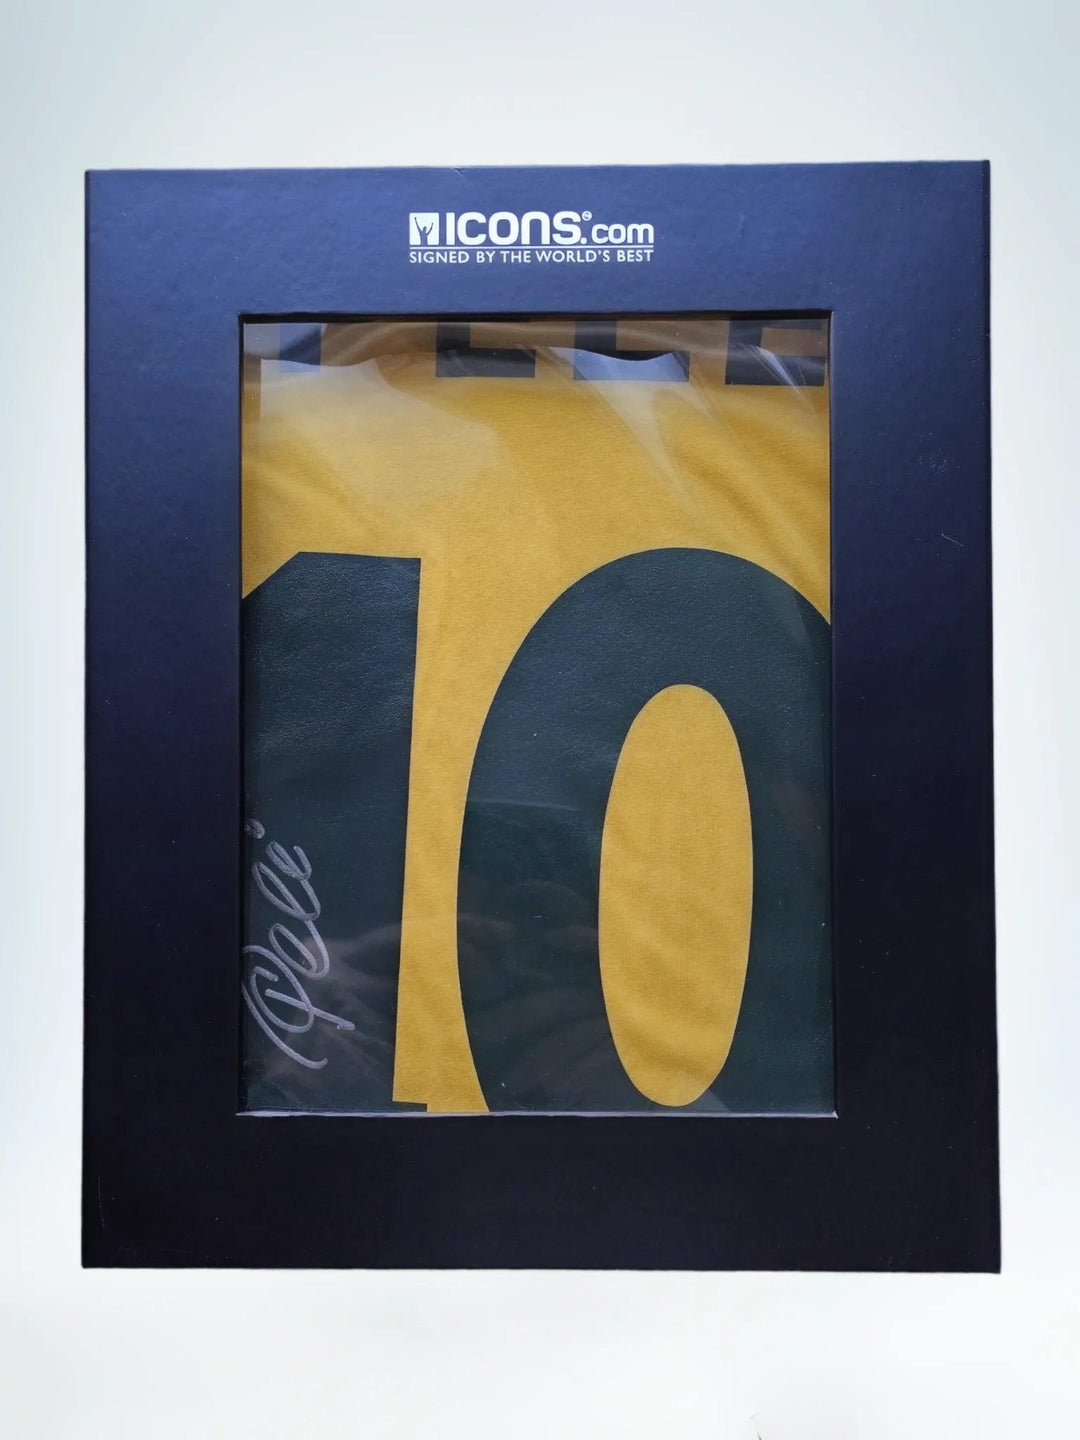 Pele 10 Brazil Retro Home - Signed Soccer Shirt | Icons.com COA